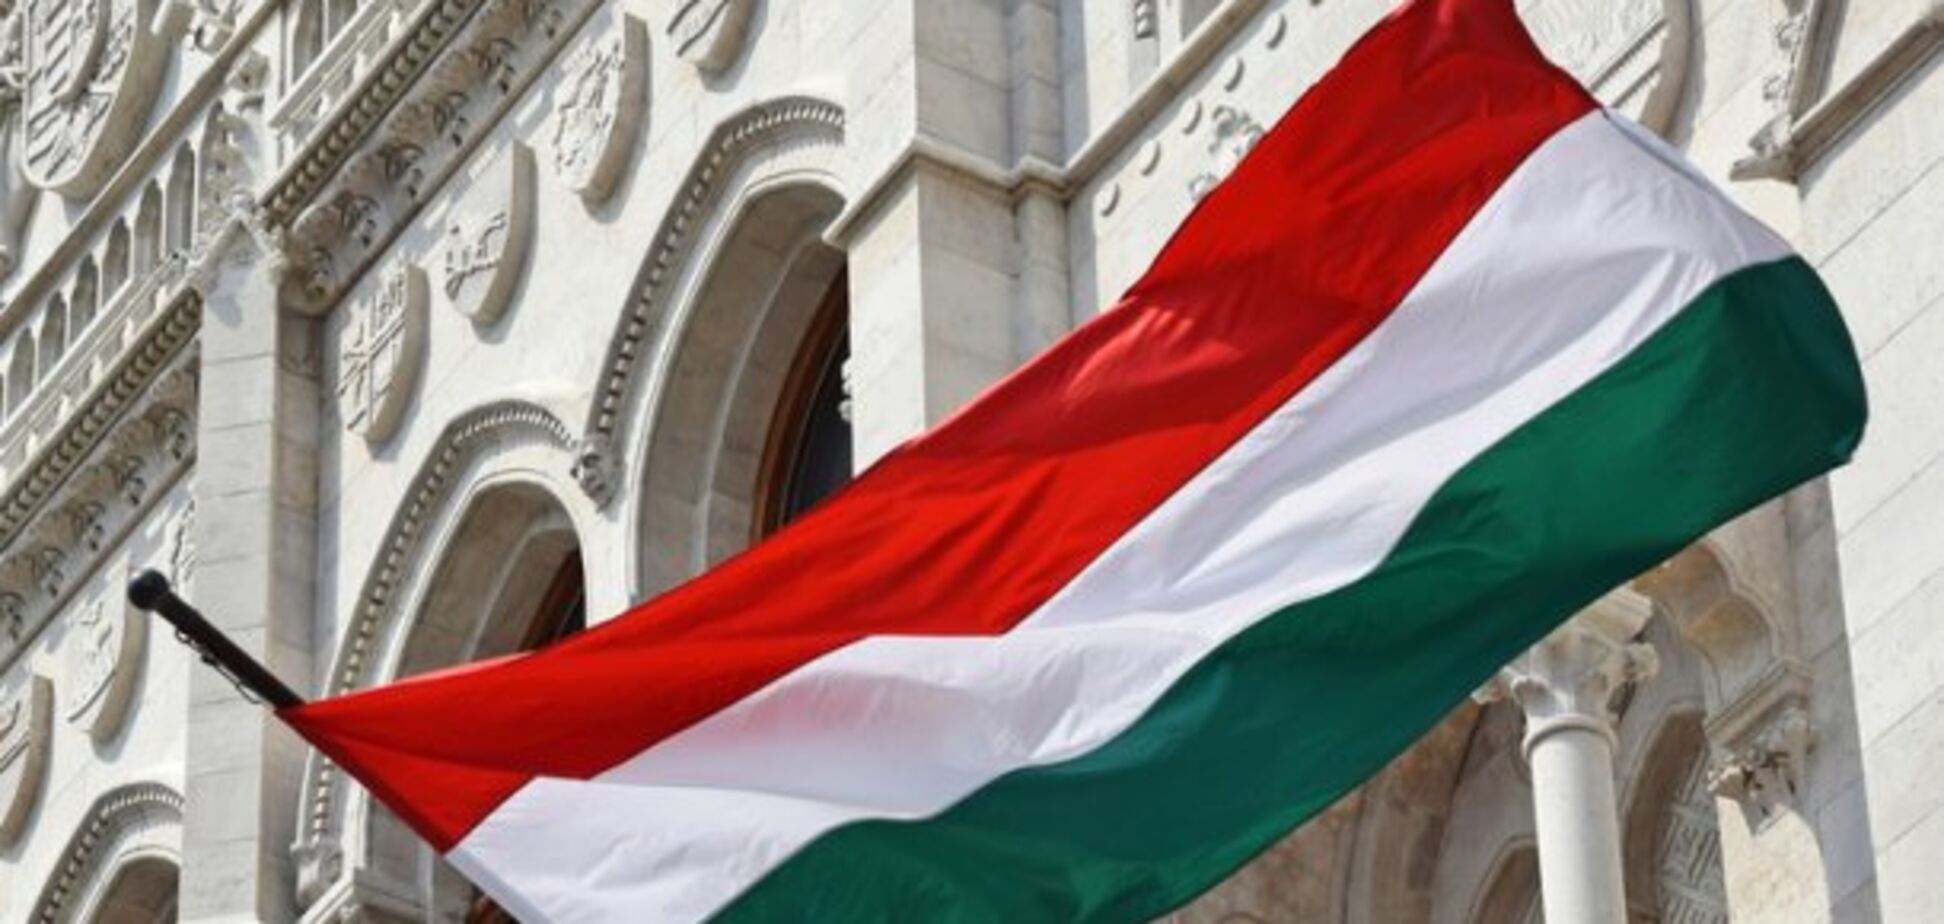 Венгрия замалчивает жуткие издевательства над украинцами - журналист